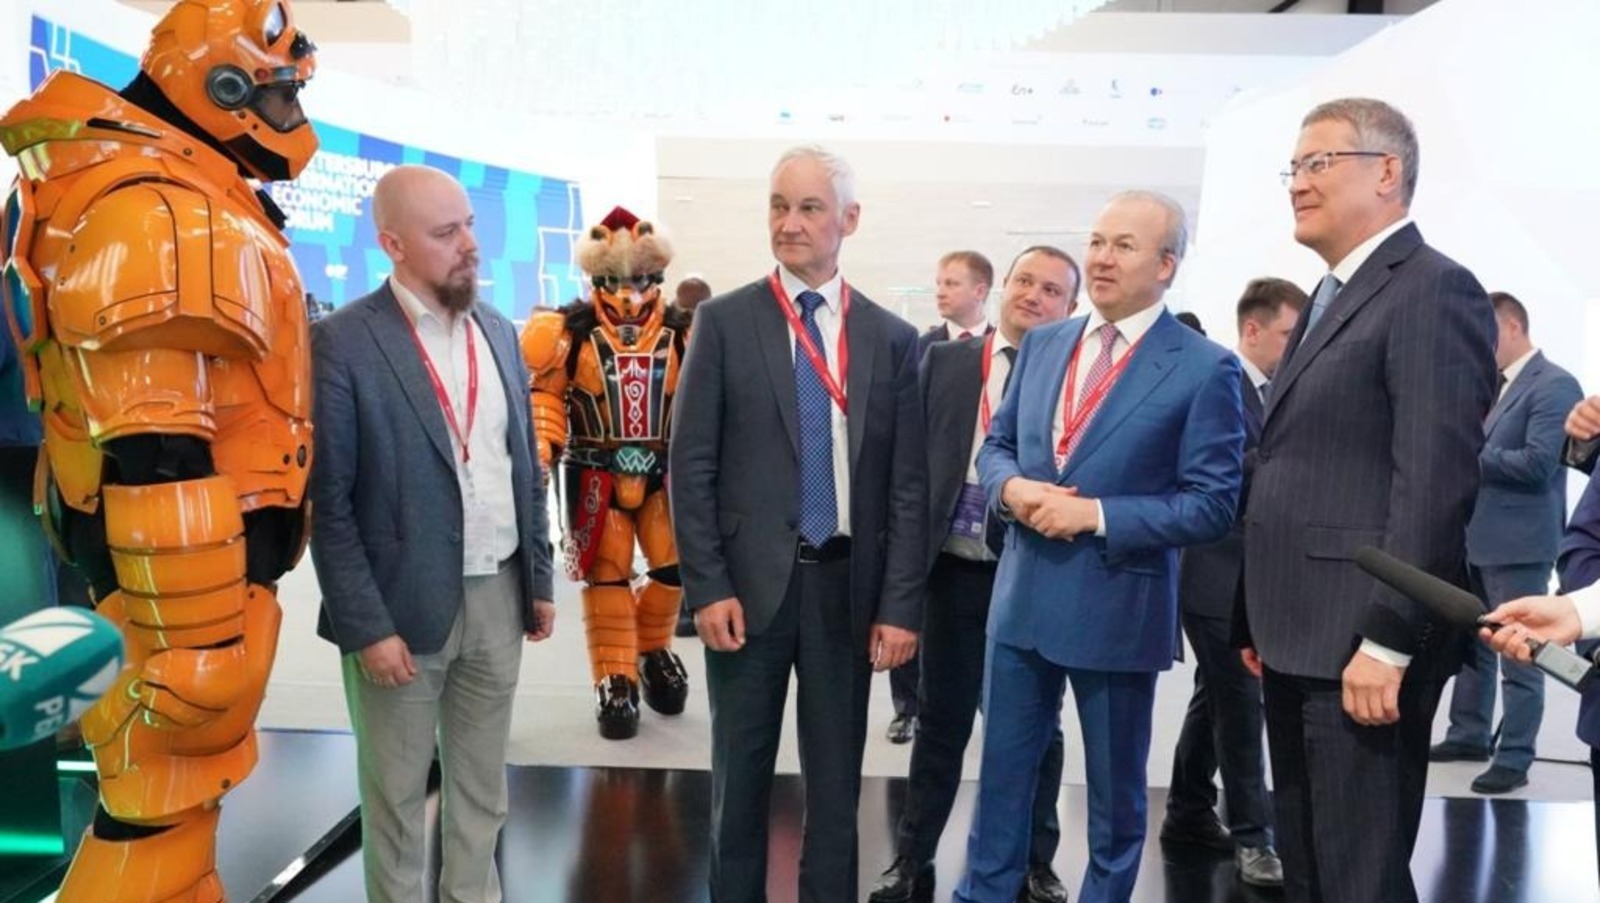 Первый вице-премьер Андрей Белоусов признал павильон Башкирии одним из лучших на международном экономическом форуме